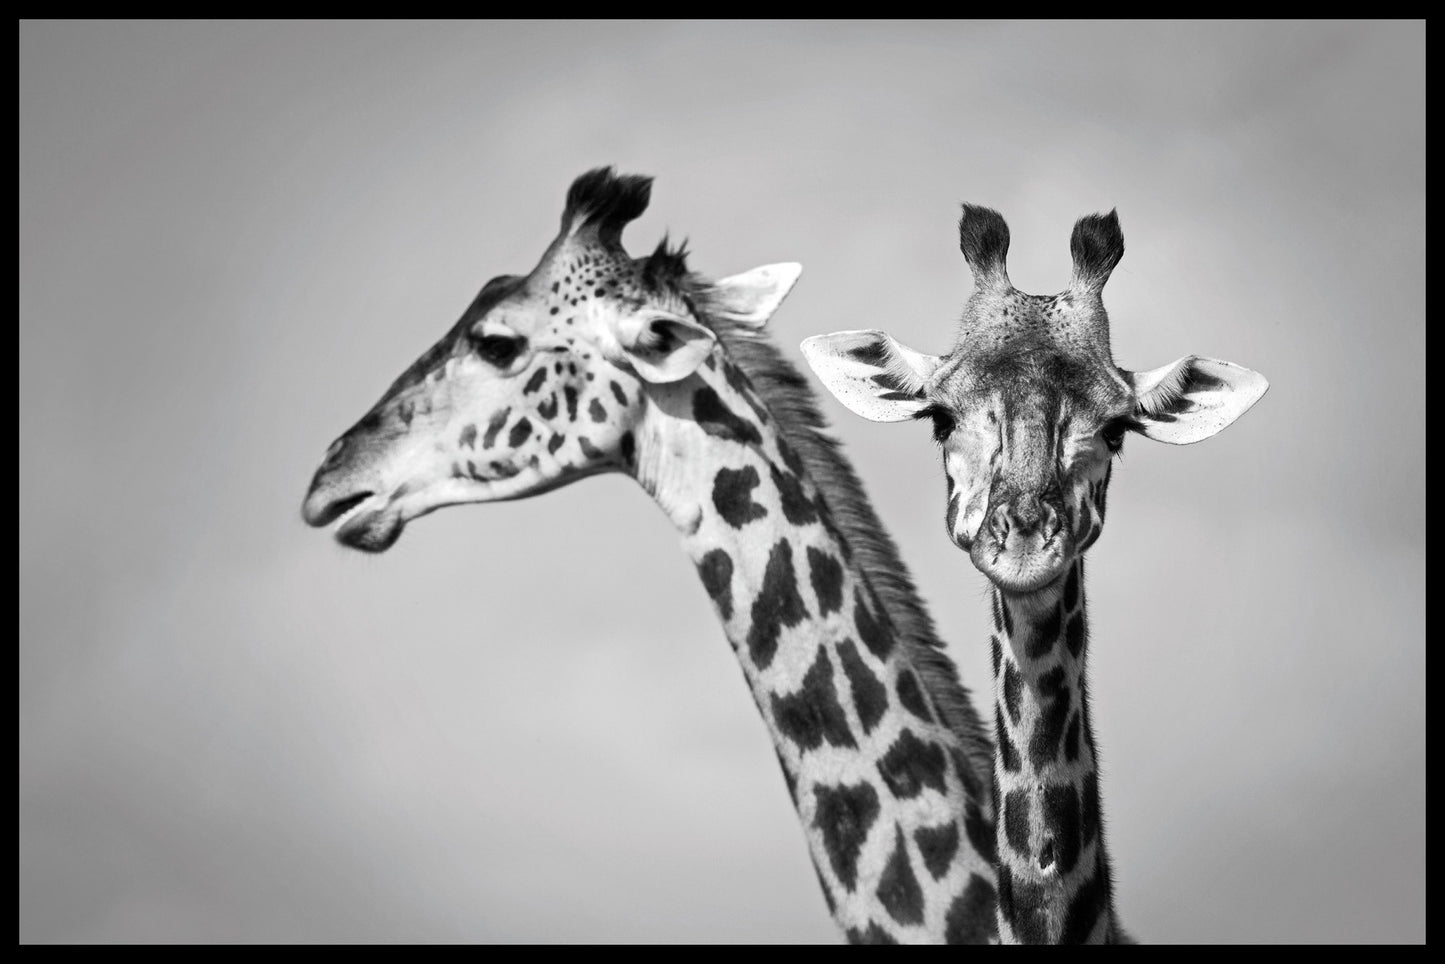  Plakat med to giraffer